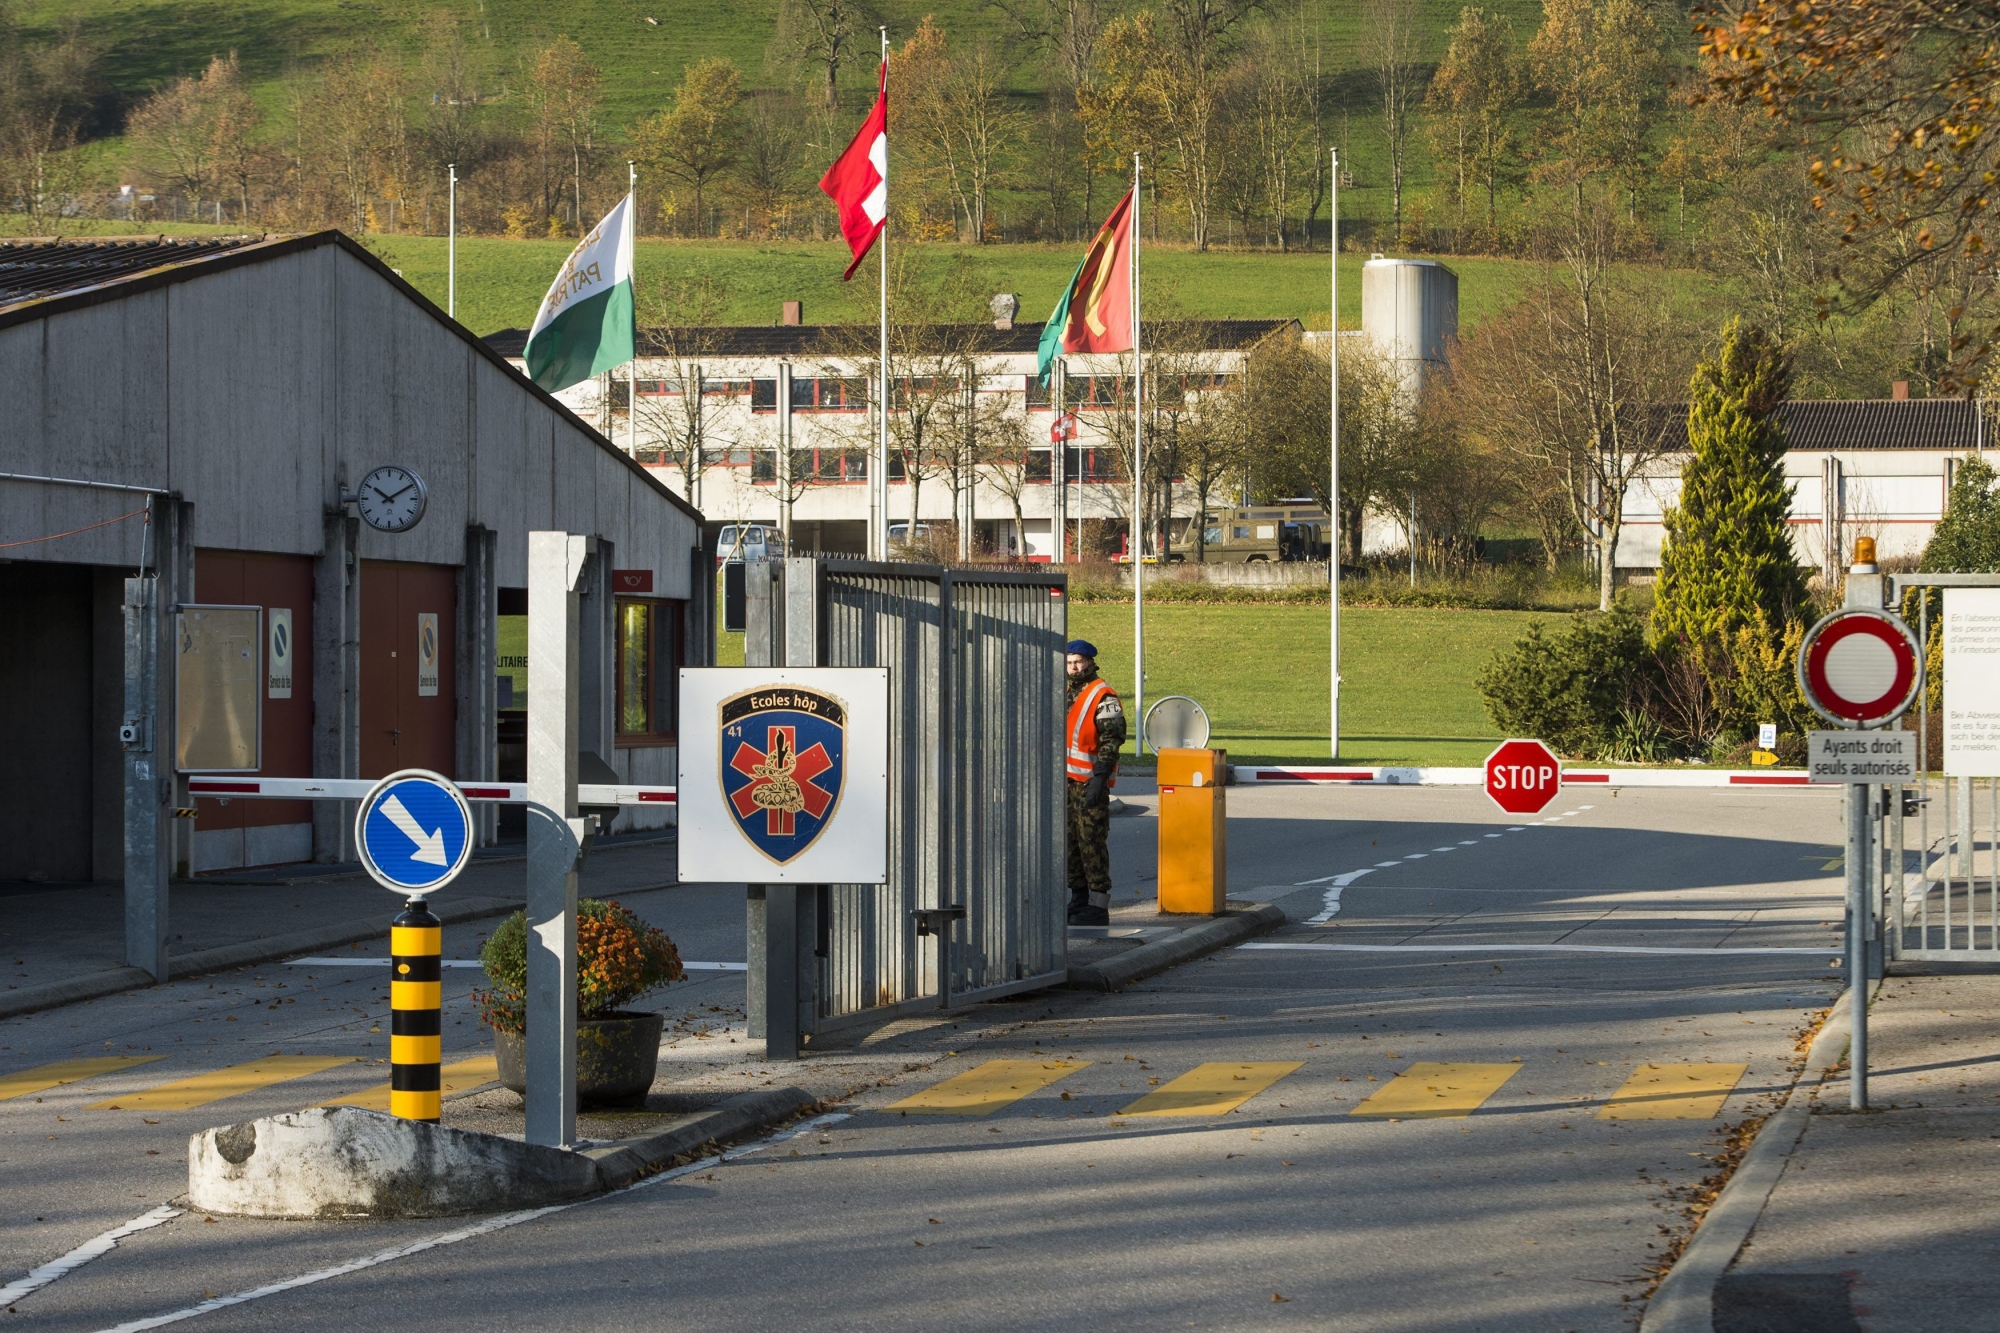 Un militaire garde l'entree de la caserne militaire de Moudon ce mardi 26 novembre 2013 a Moudon dans le canton de Vaud. En Suisse romande, les places de Moudon (VD), Savatan (VS), St-Maurice (VS), la Poya (FR) et les Vernets (GE) fermeront a annonce le Conseiller federal Ueli Maurer ce matin. (KEYSTONE/Jean-Christophe Bott) SCHWEIZ MILITAER KASERNE MOUDON